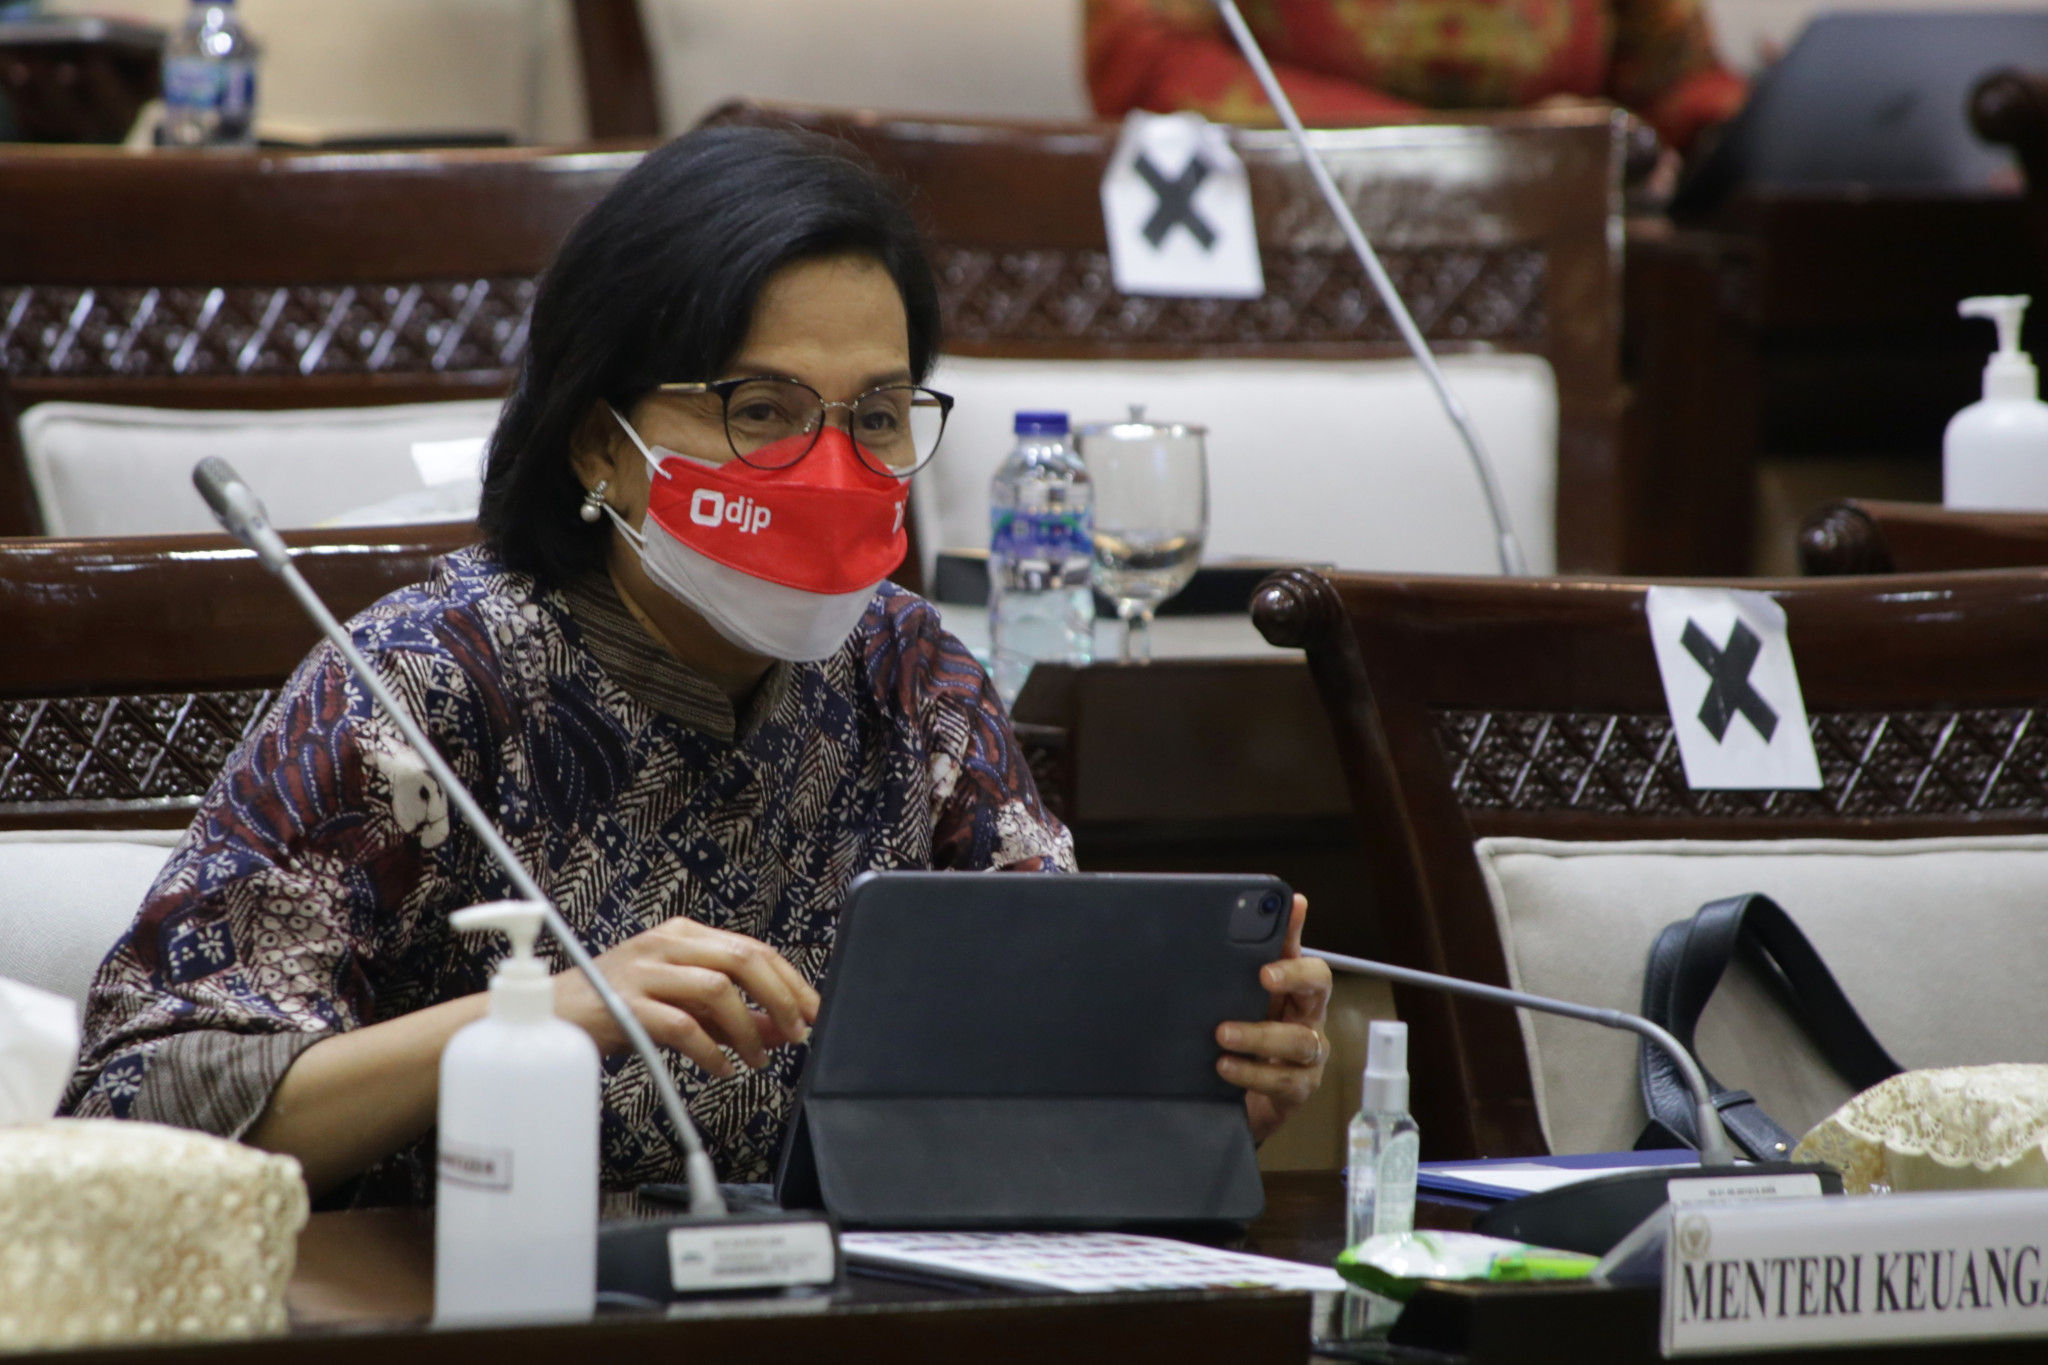 Menteri Keuangan Sri Mulyani hadir dalam rapat kerja di Kompleks Parlemen MPR/DPR-DPD, Senayan, Jakarta, Senin, 20 September 2021. Foto: Ismail Pohan/TrenAsia